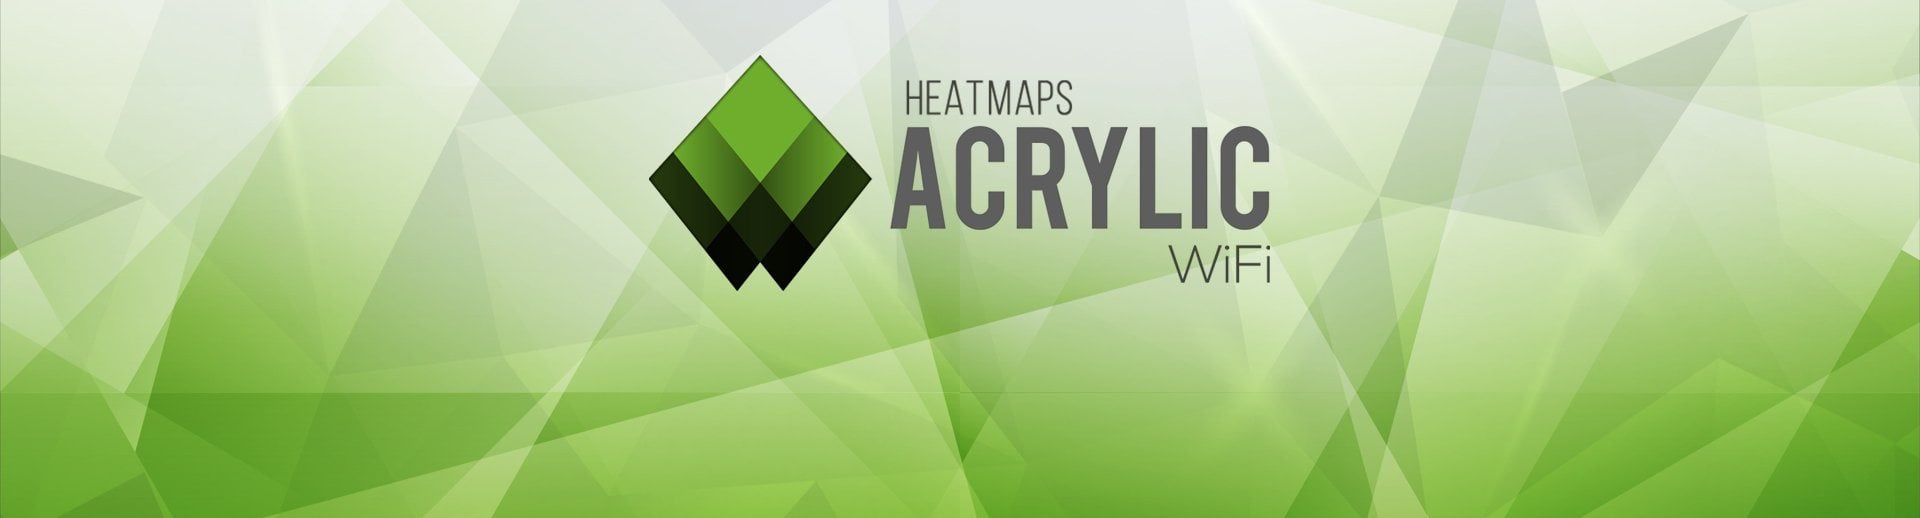 acrylic wifi heatmaps missing snr data